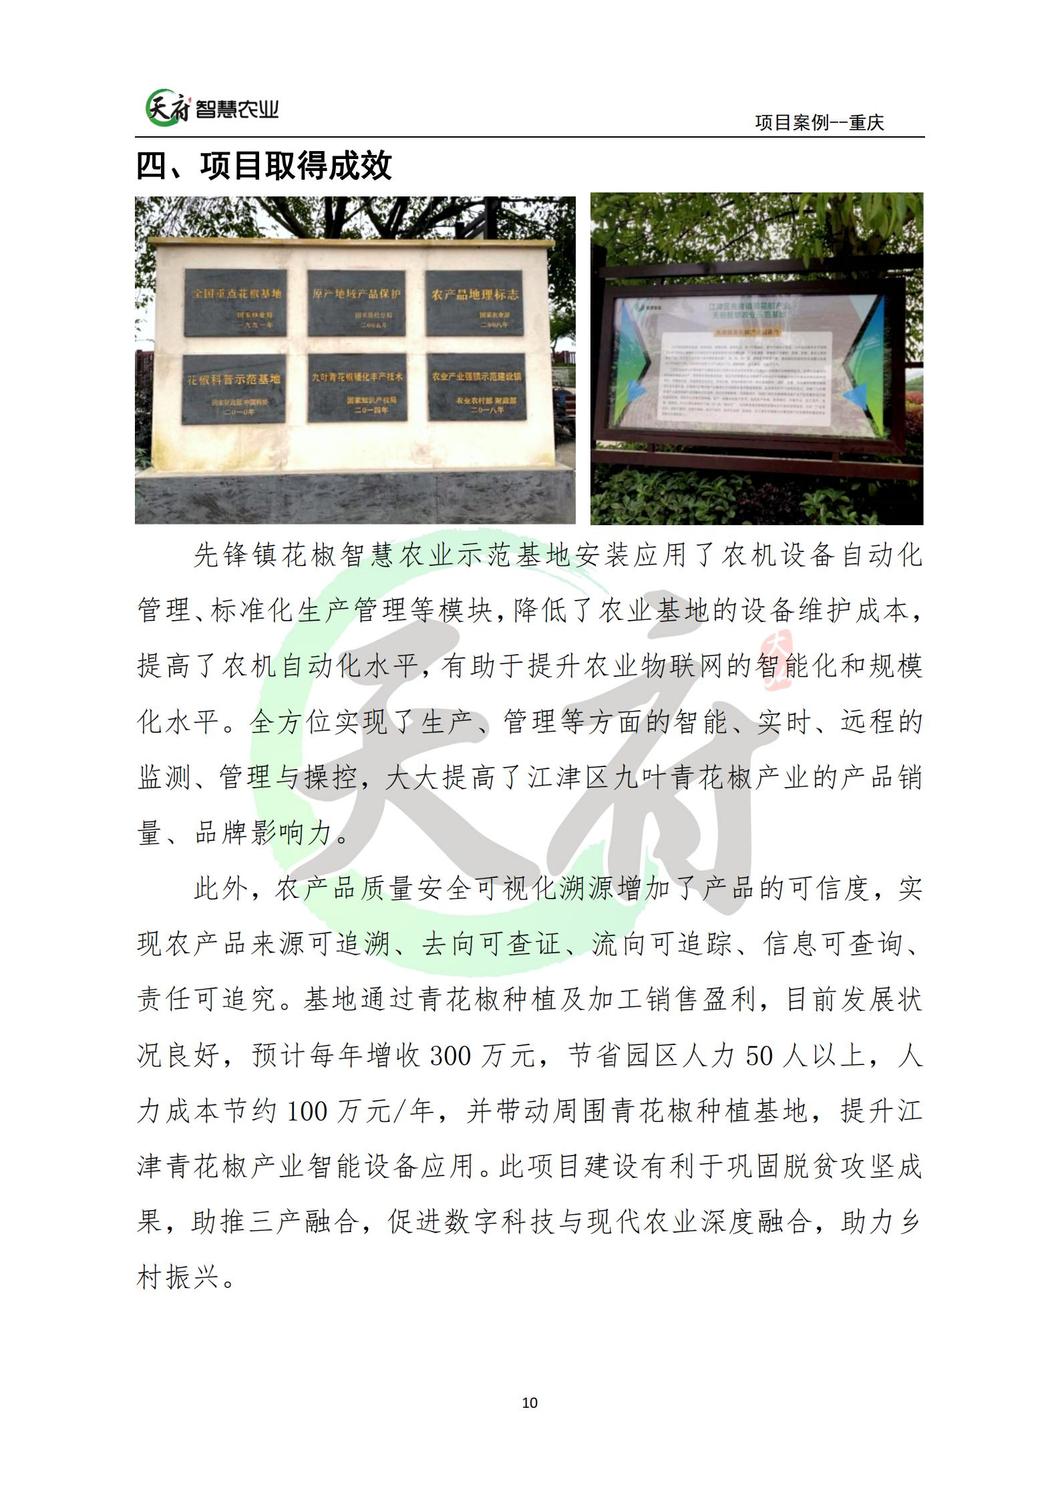 案例7：重庆数字农业花椒示范基地_10.jpg